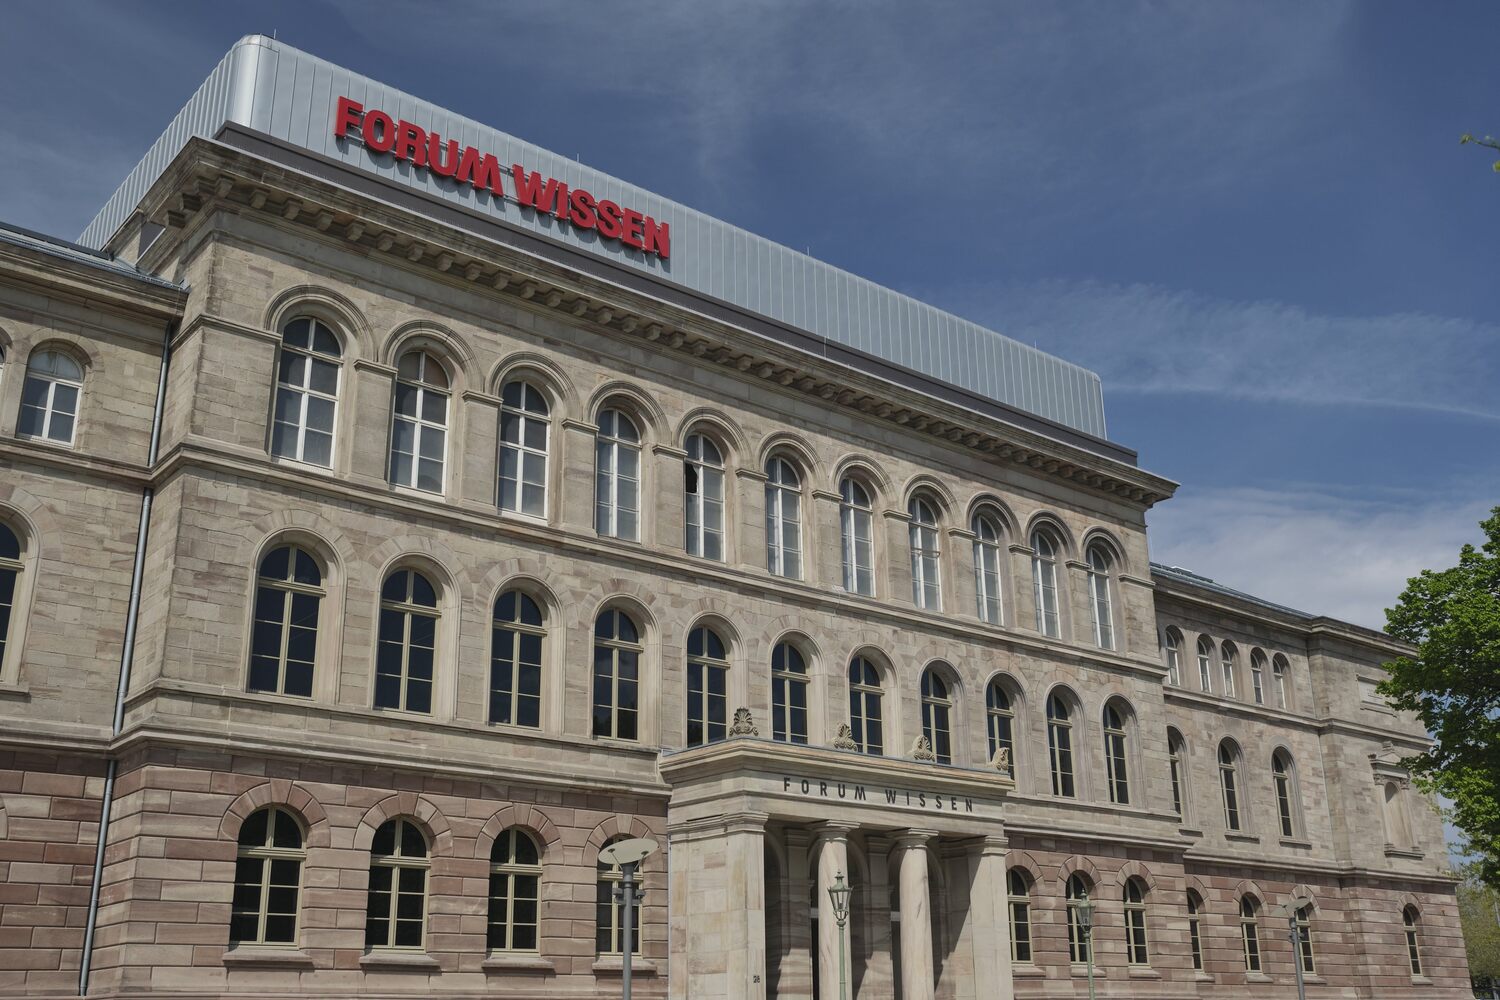 Nach fast zehn Jahren der Planung und des Umbaus ist es endlich soweit: Das Forum Wissen der Universität Göttingen öffnet am 4. und 5. Juni 2022 erstmals seine Türen für die Öffentlichkeit.